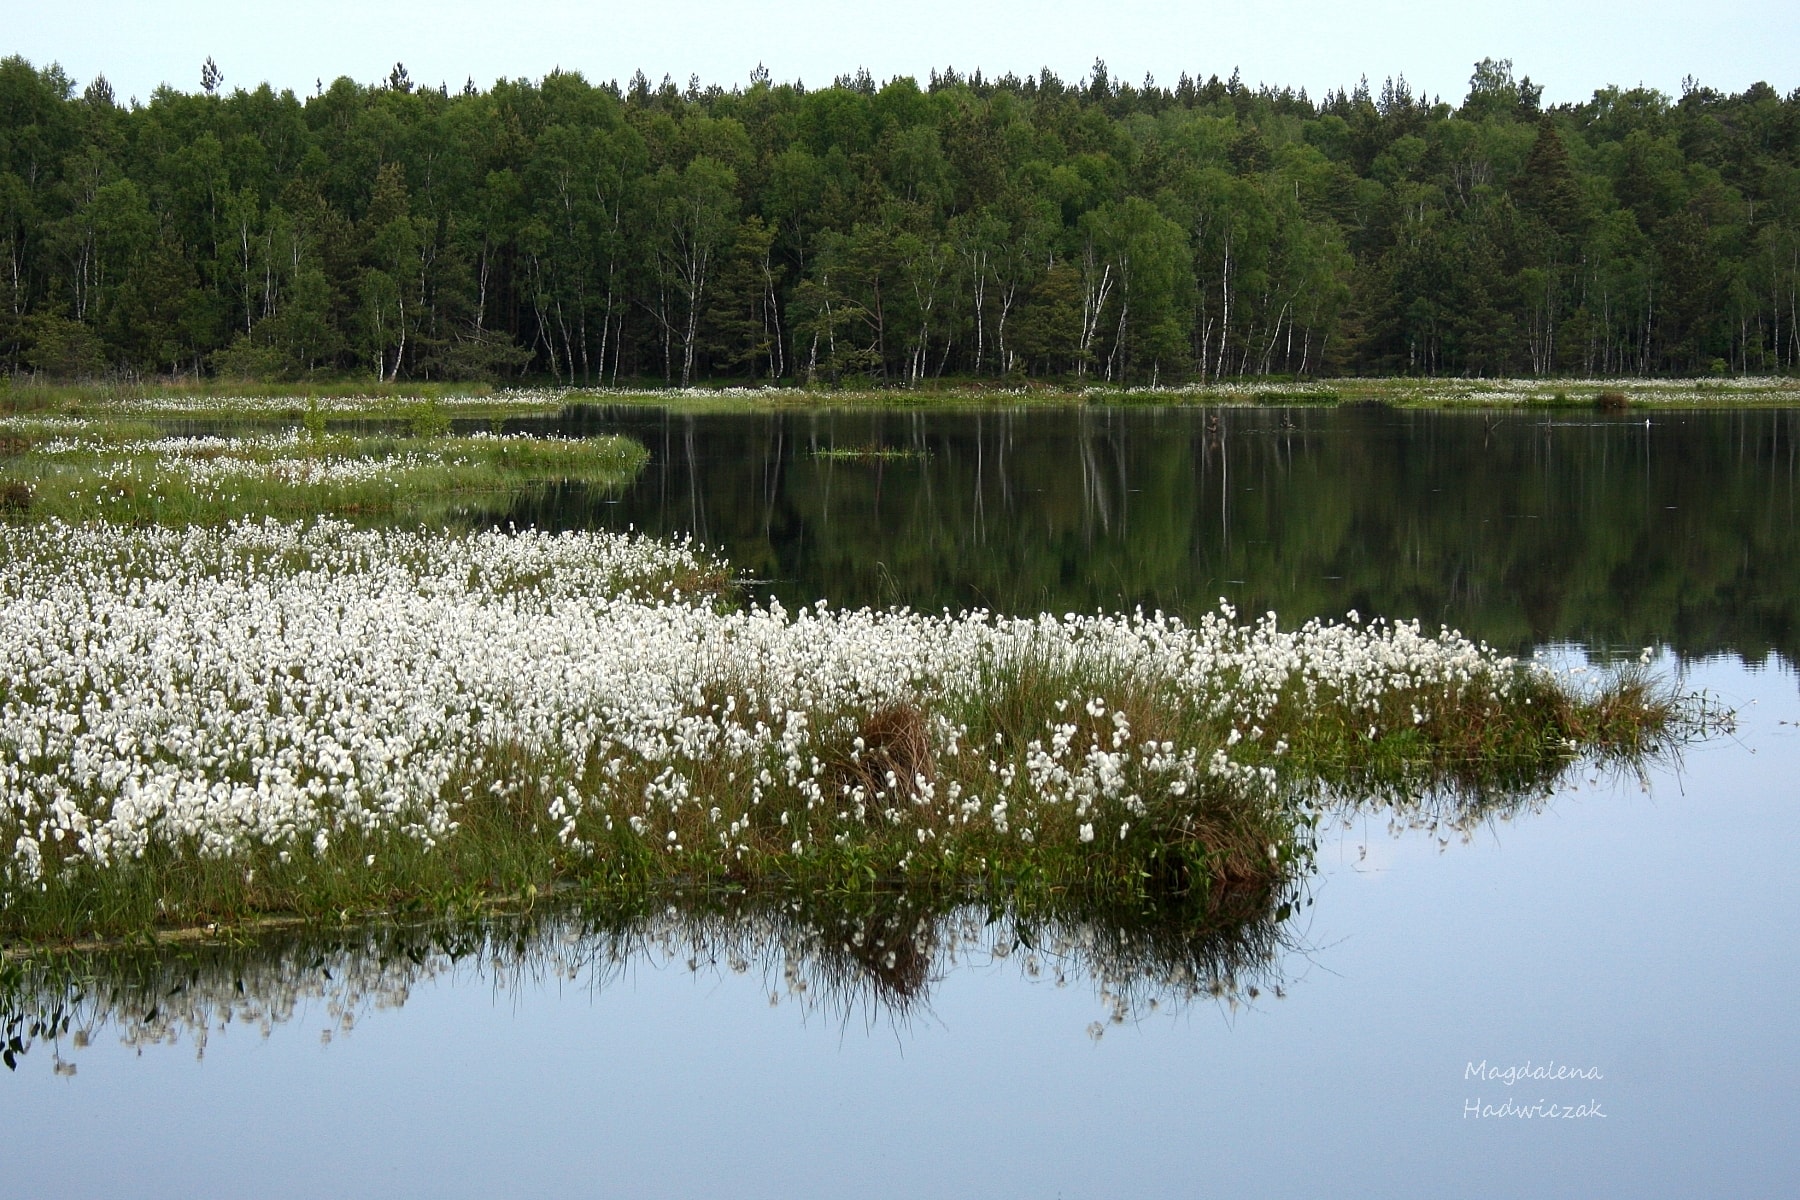 Wiosna nad jeziorem - odbita w lustrze wody sciana lasu